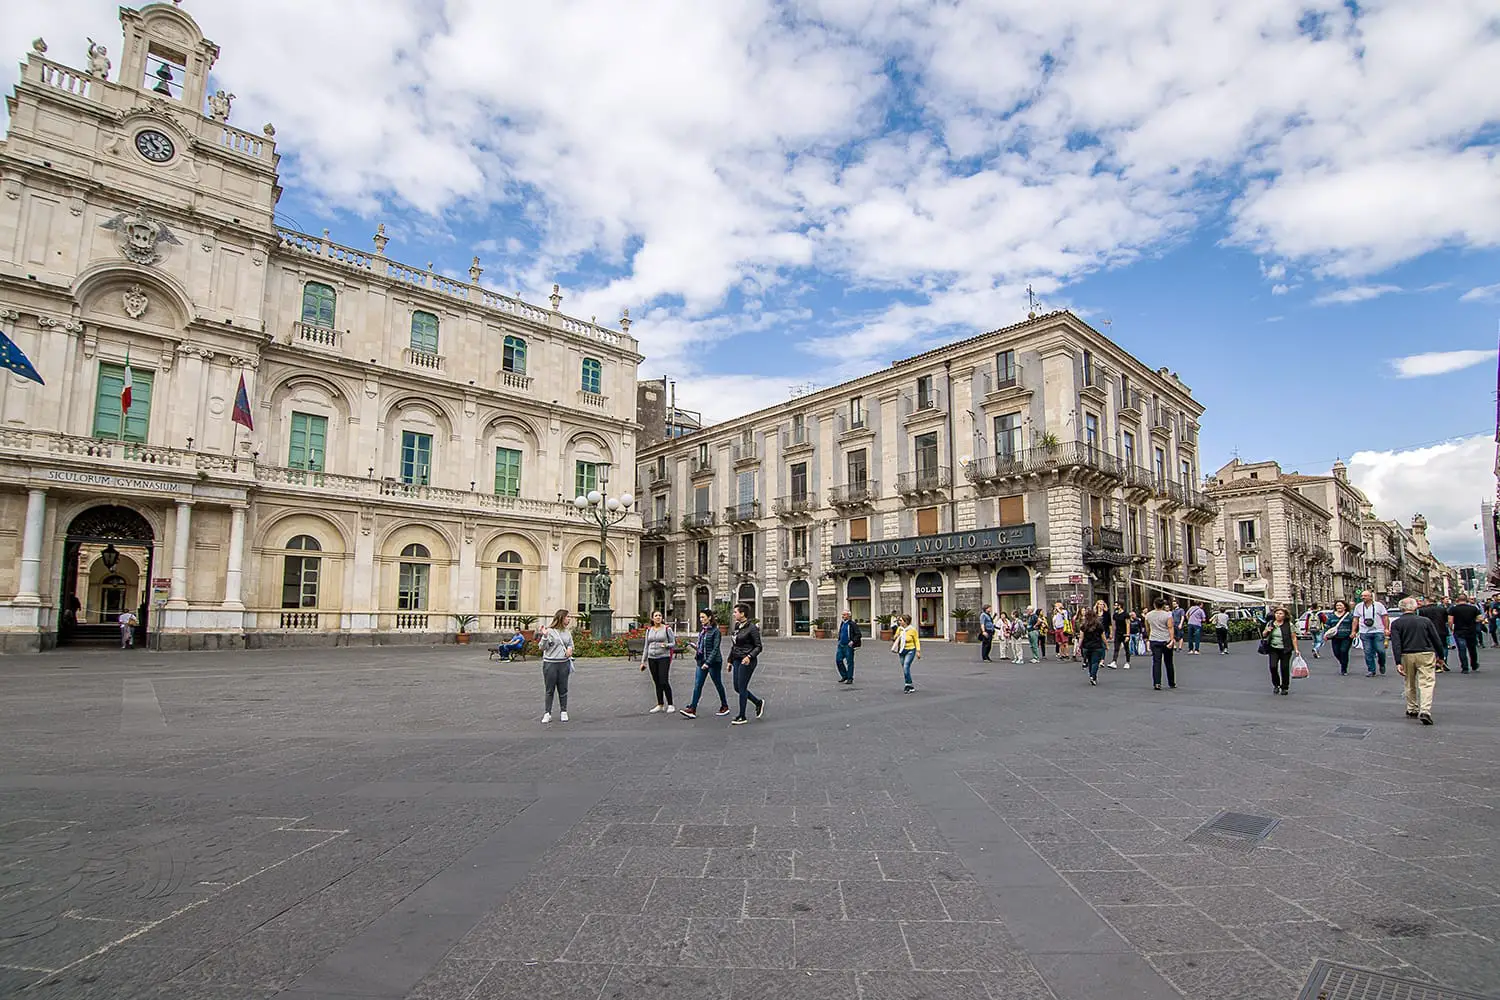 Palazzo dell'Universita in Universita square, via Etnea, one of the most scenographic squares in Catania, Sicily, Italy